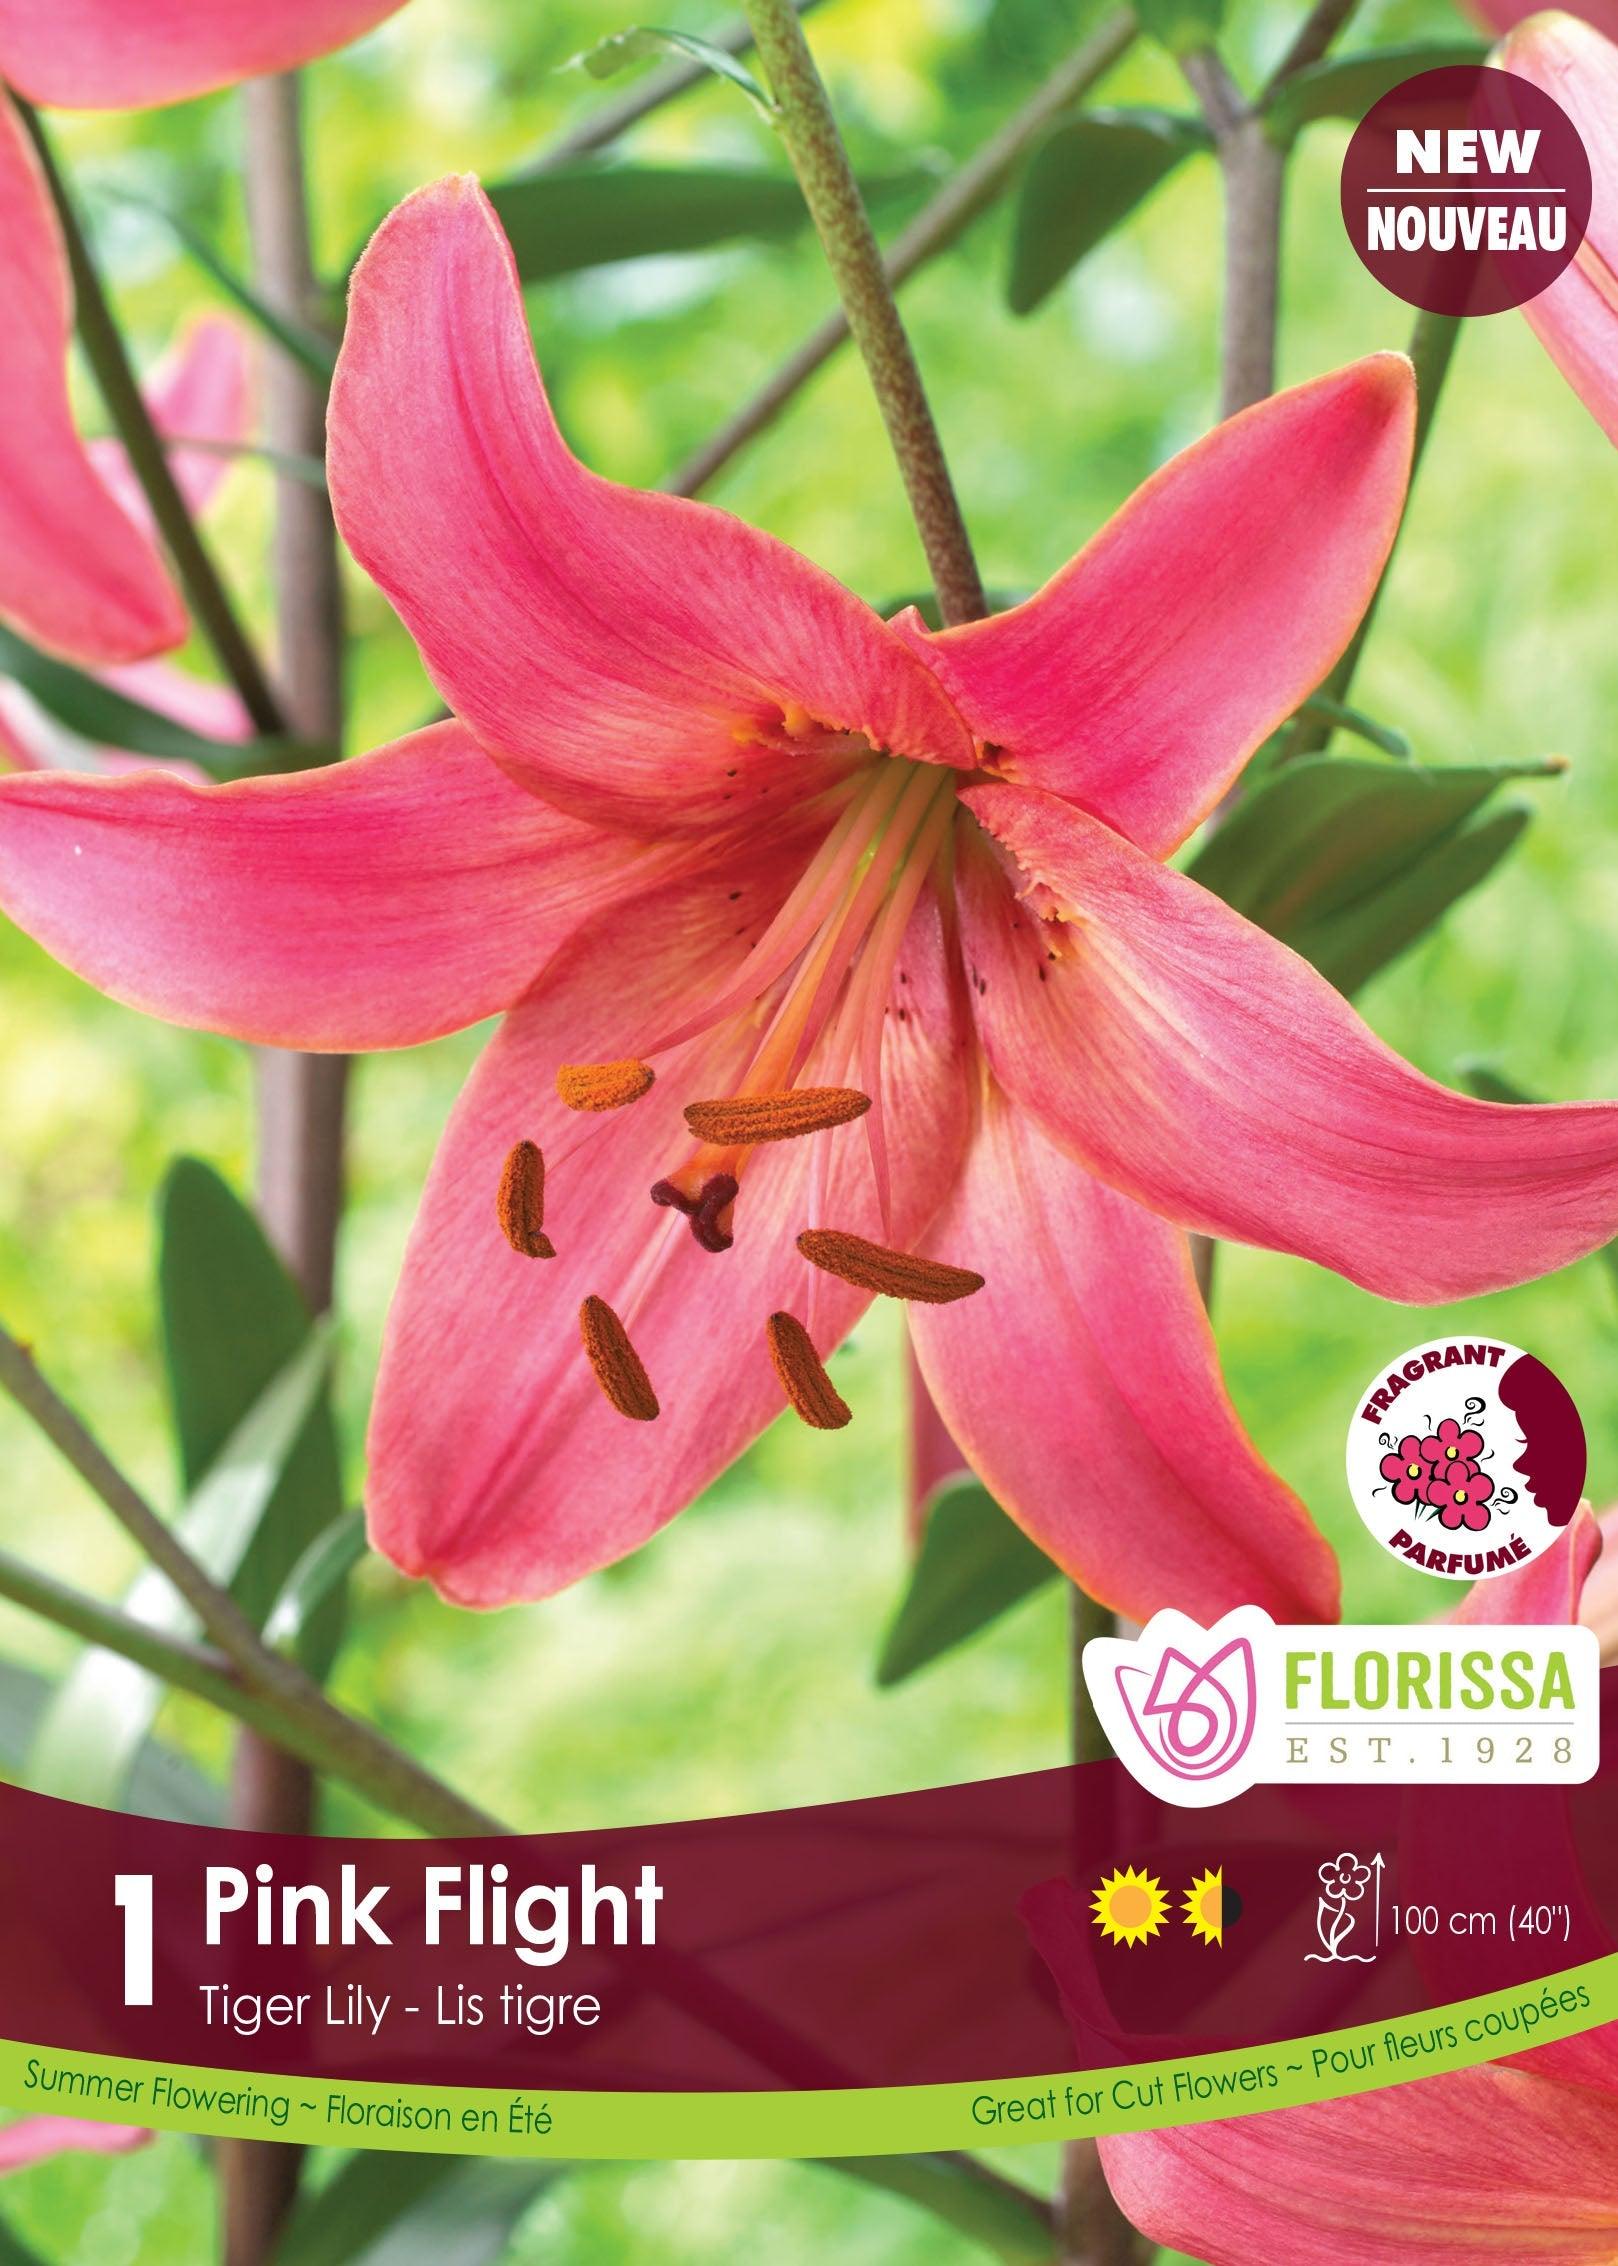 Tiger Lily Pink Flight 1/PK